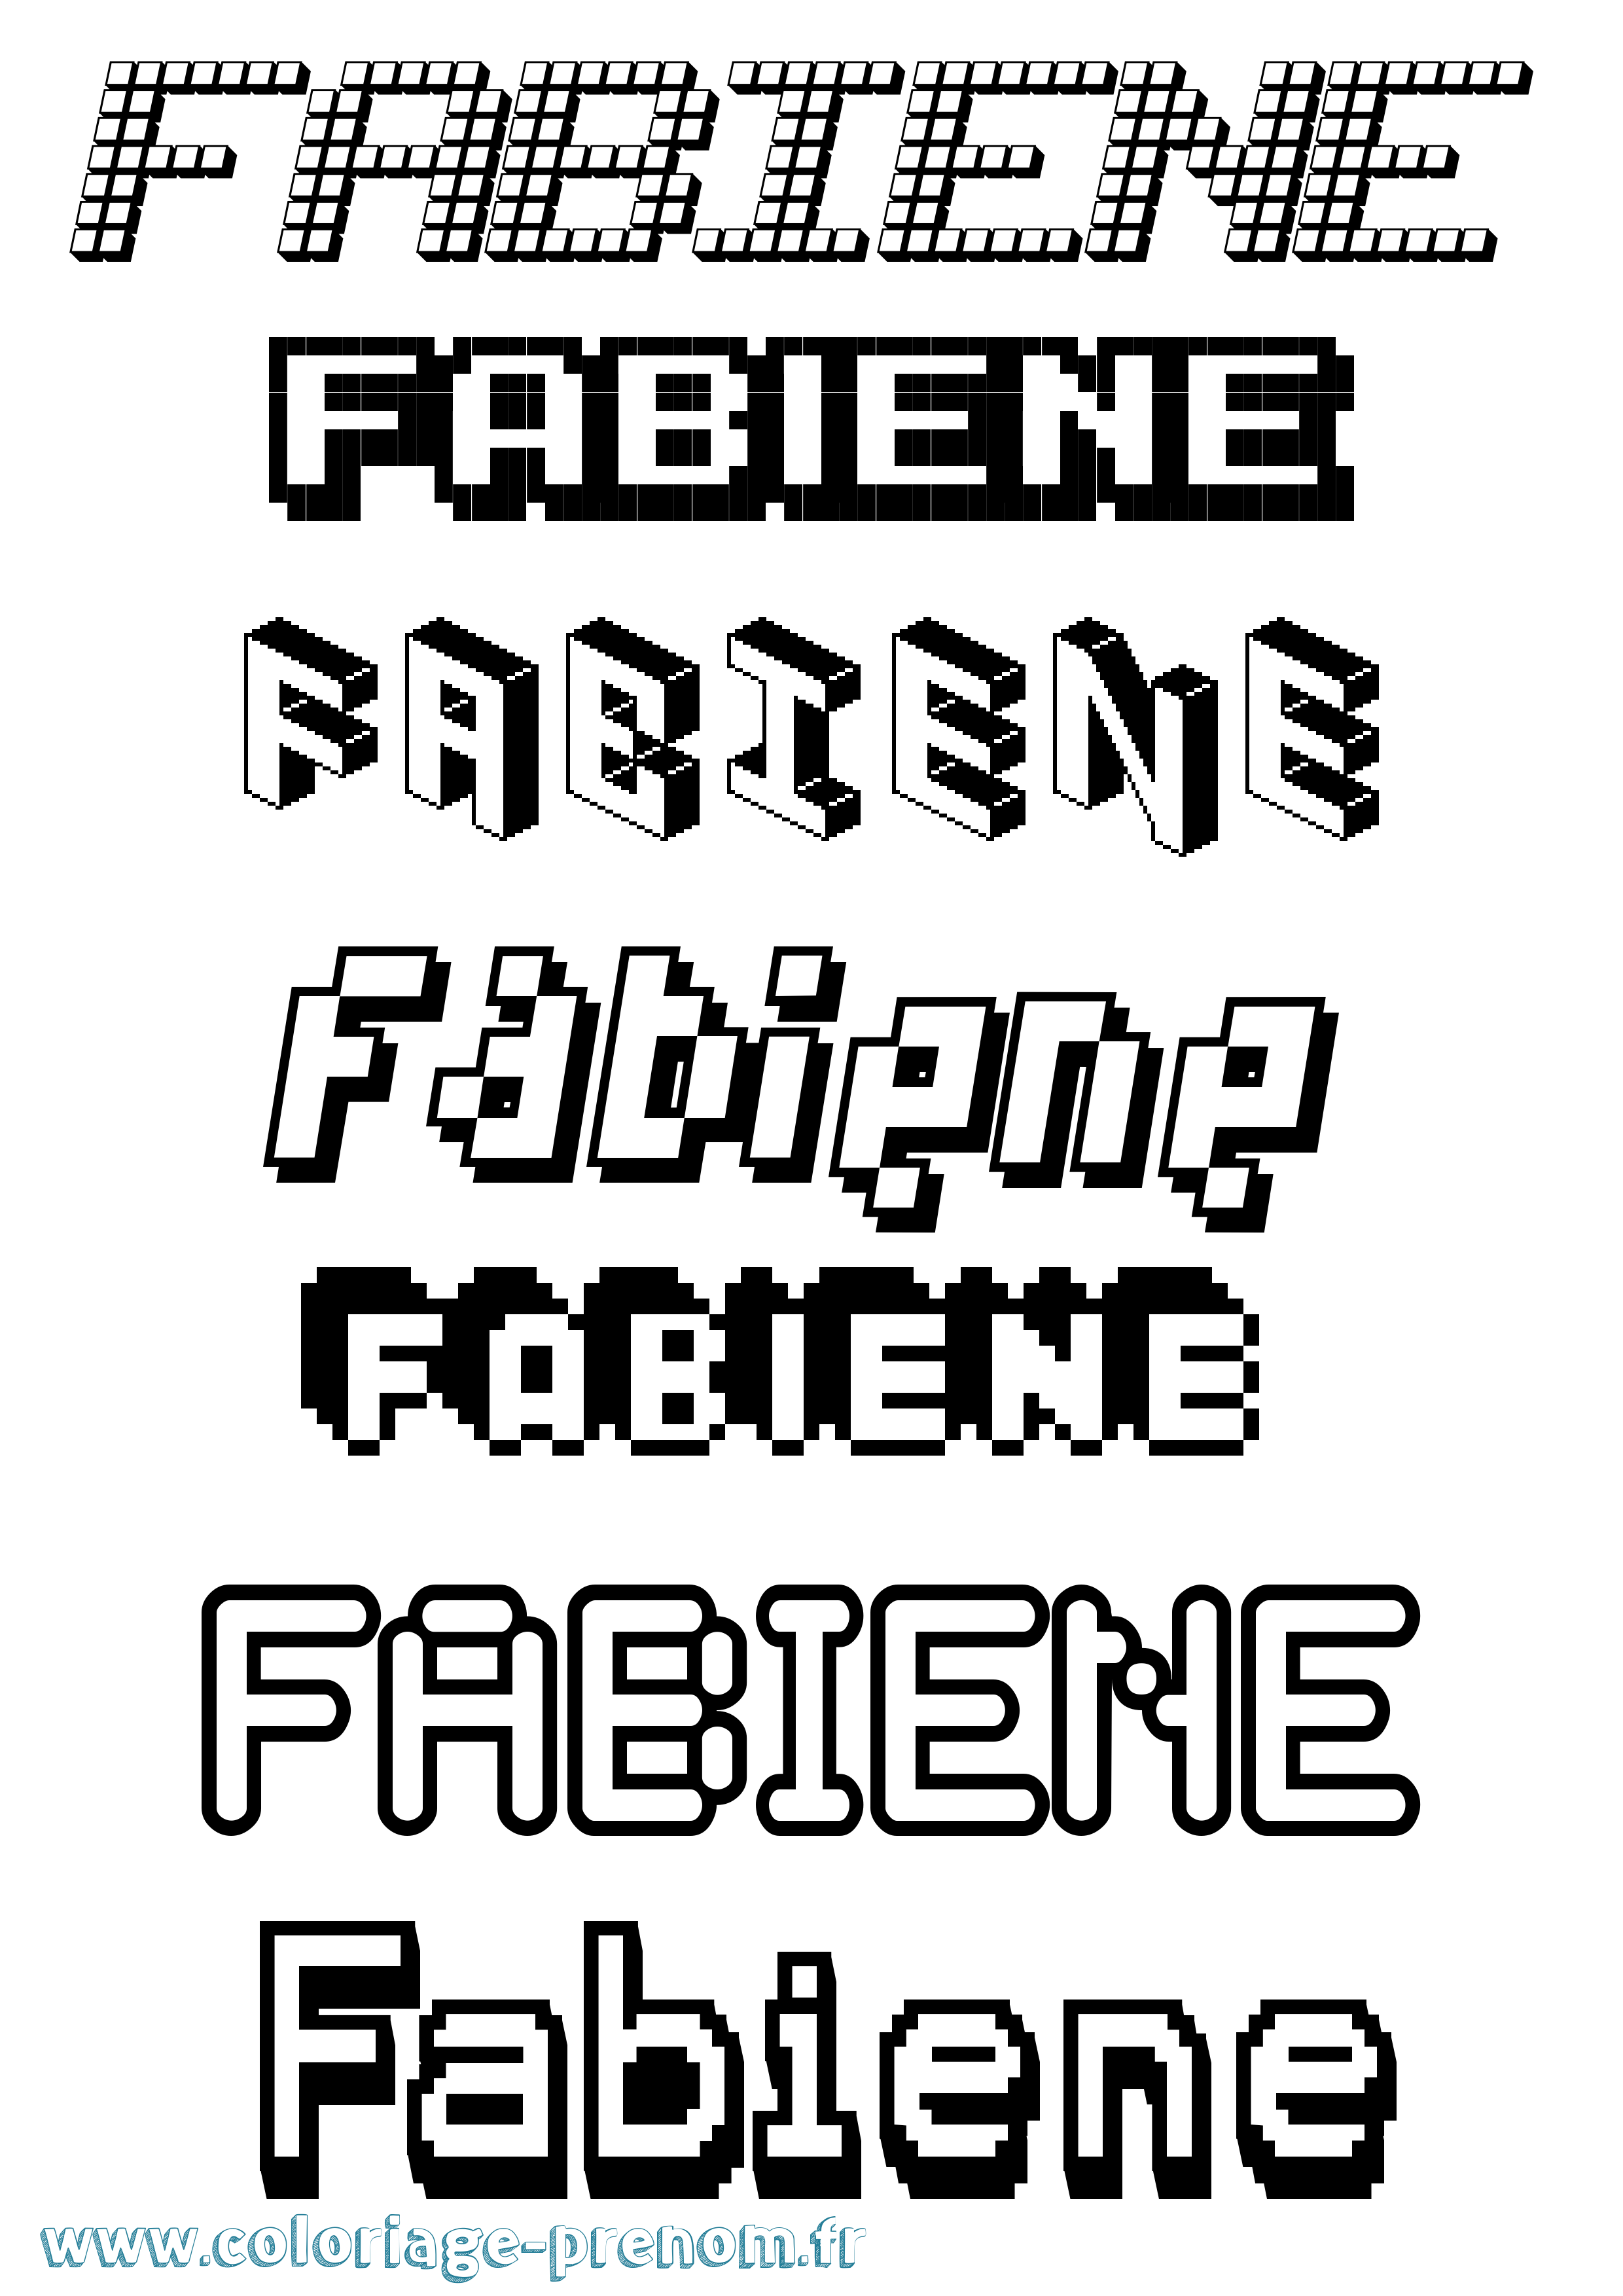 Coloriage prénom Fabiene Pixel